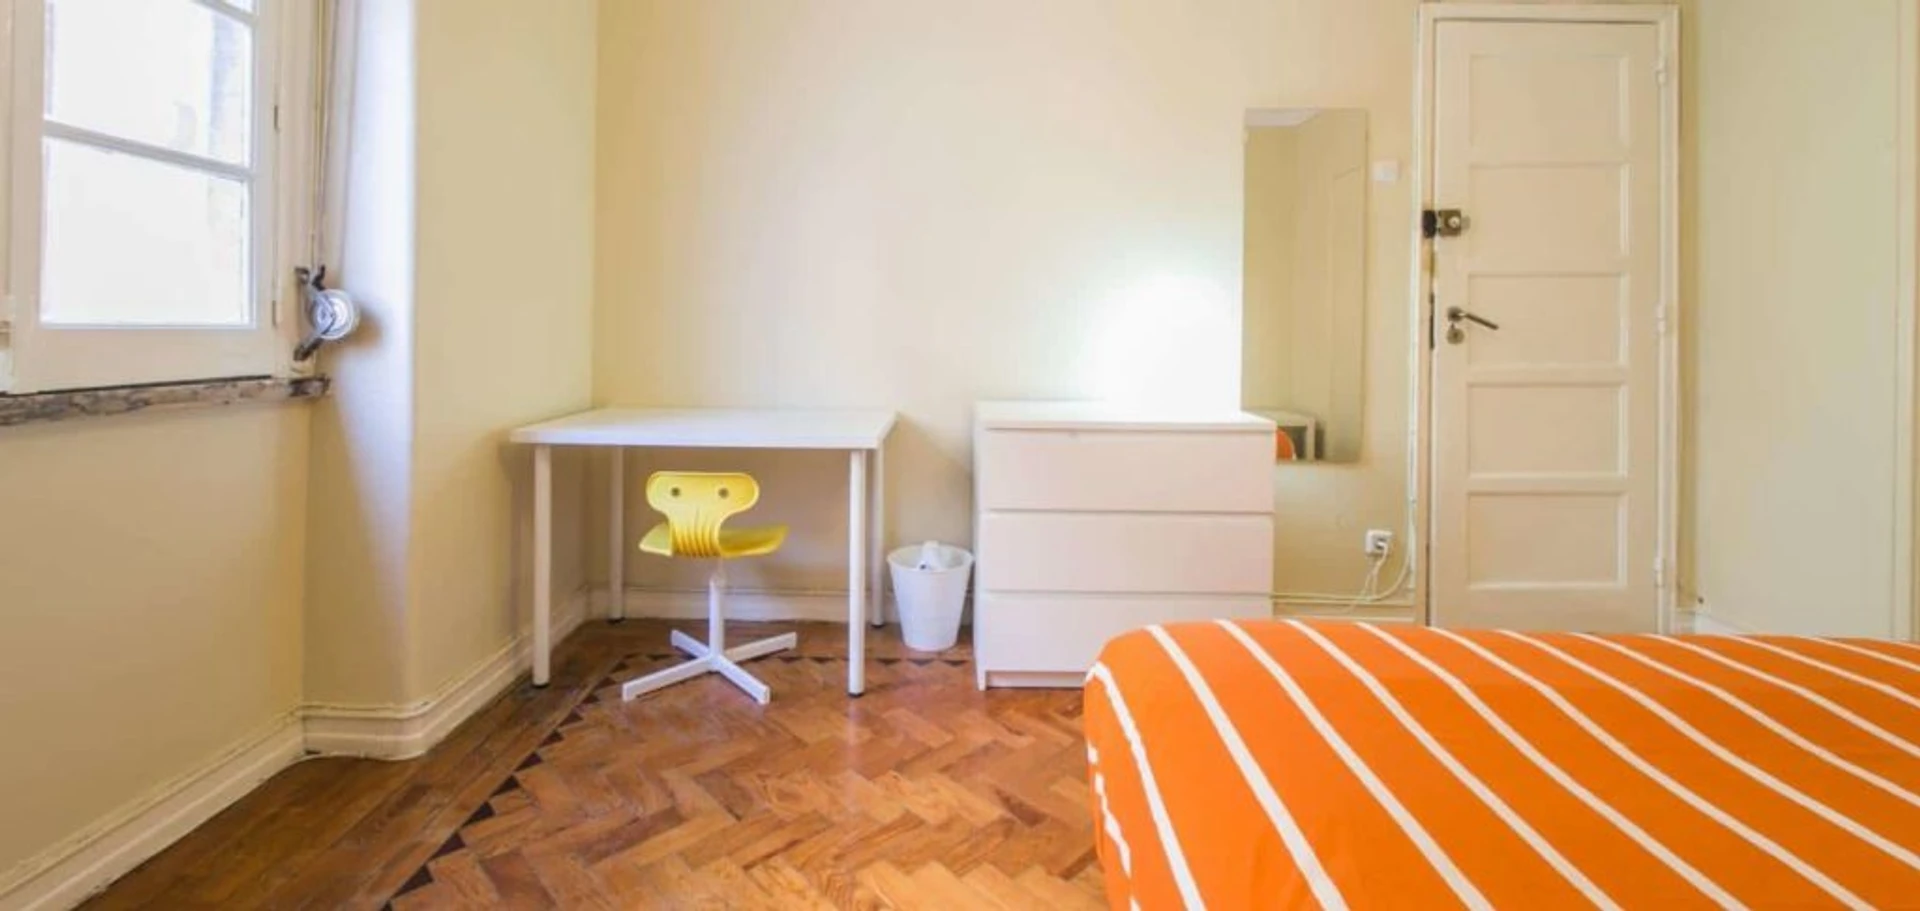 Quarto para alugar num apartamento partilhado em Lisboa